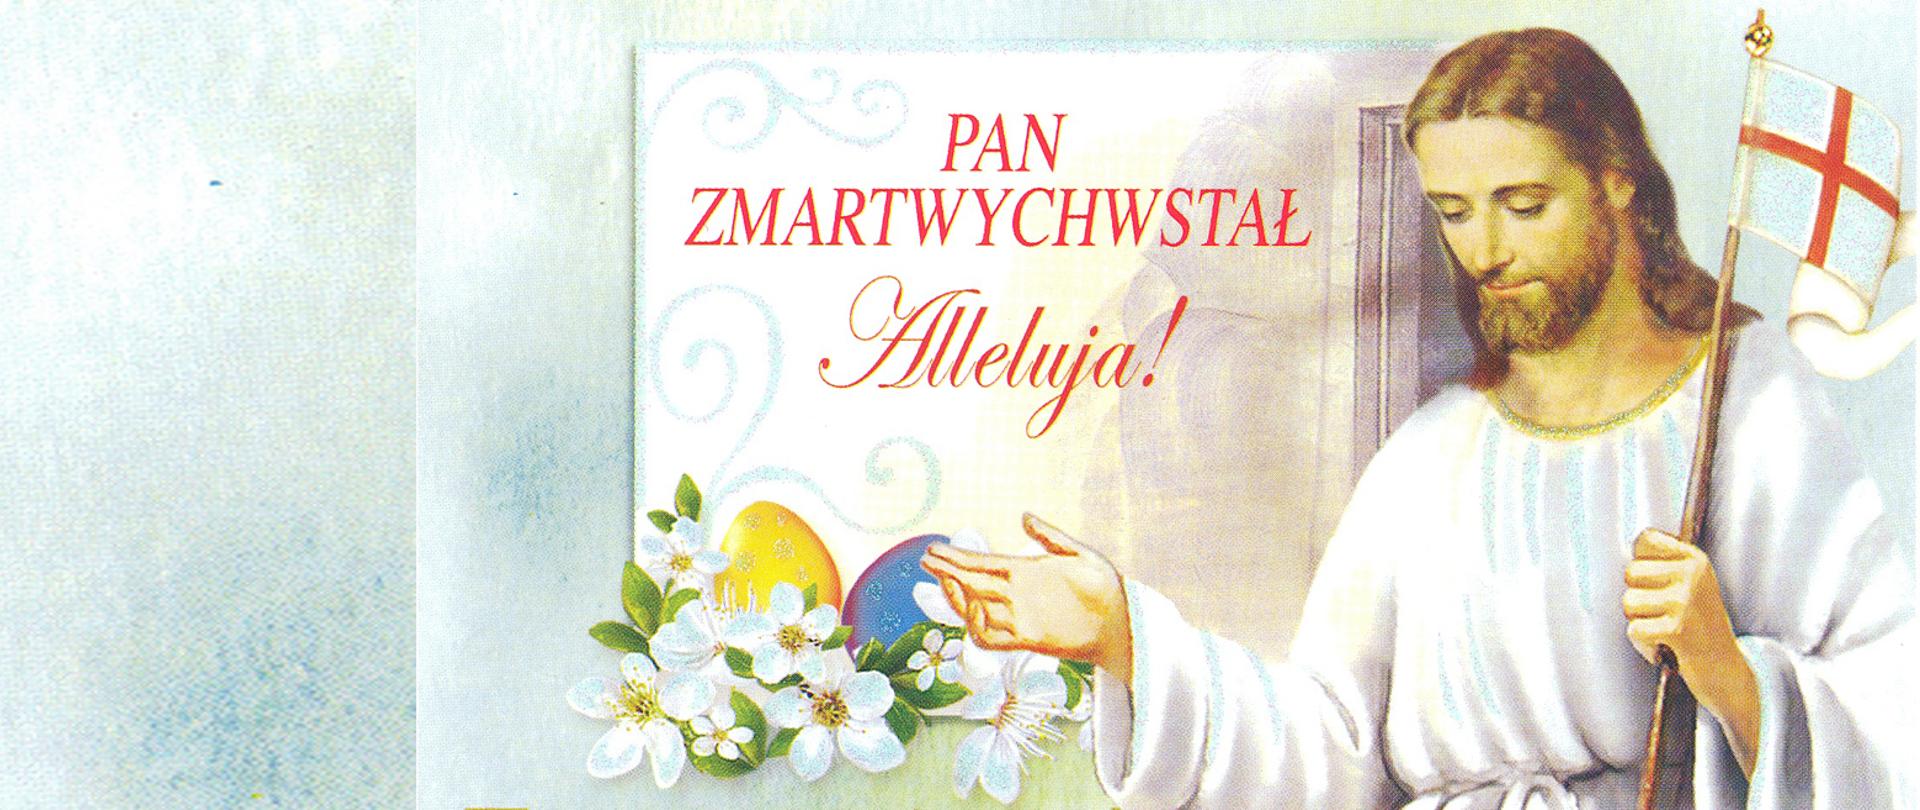 Христос з мертвых встал. С Пасхой на польском языке. Поздравление с Пасхой на польском языке. Поздравление с Пасхой на польском. Пасха польская поздравить.